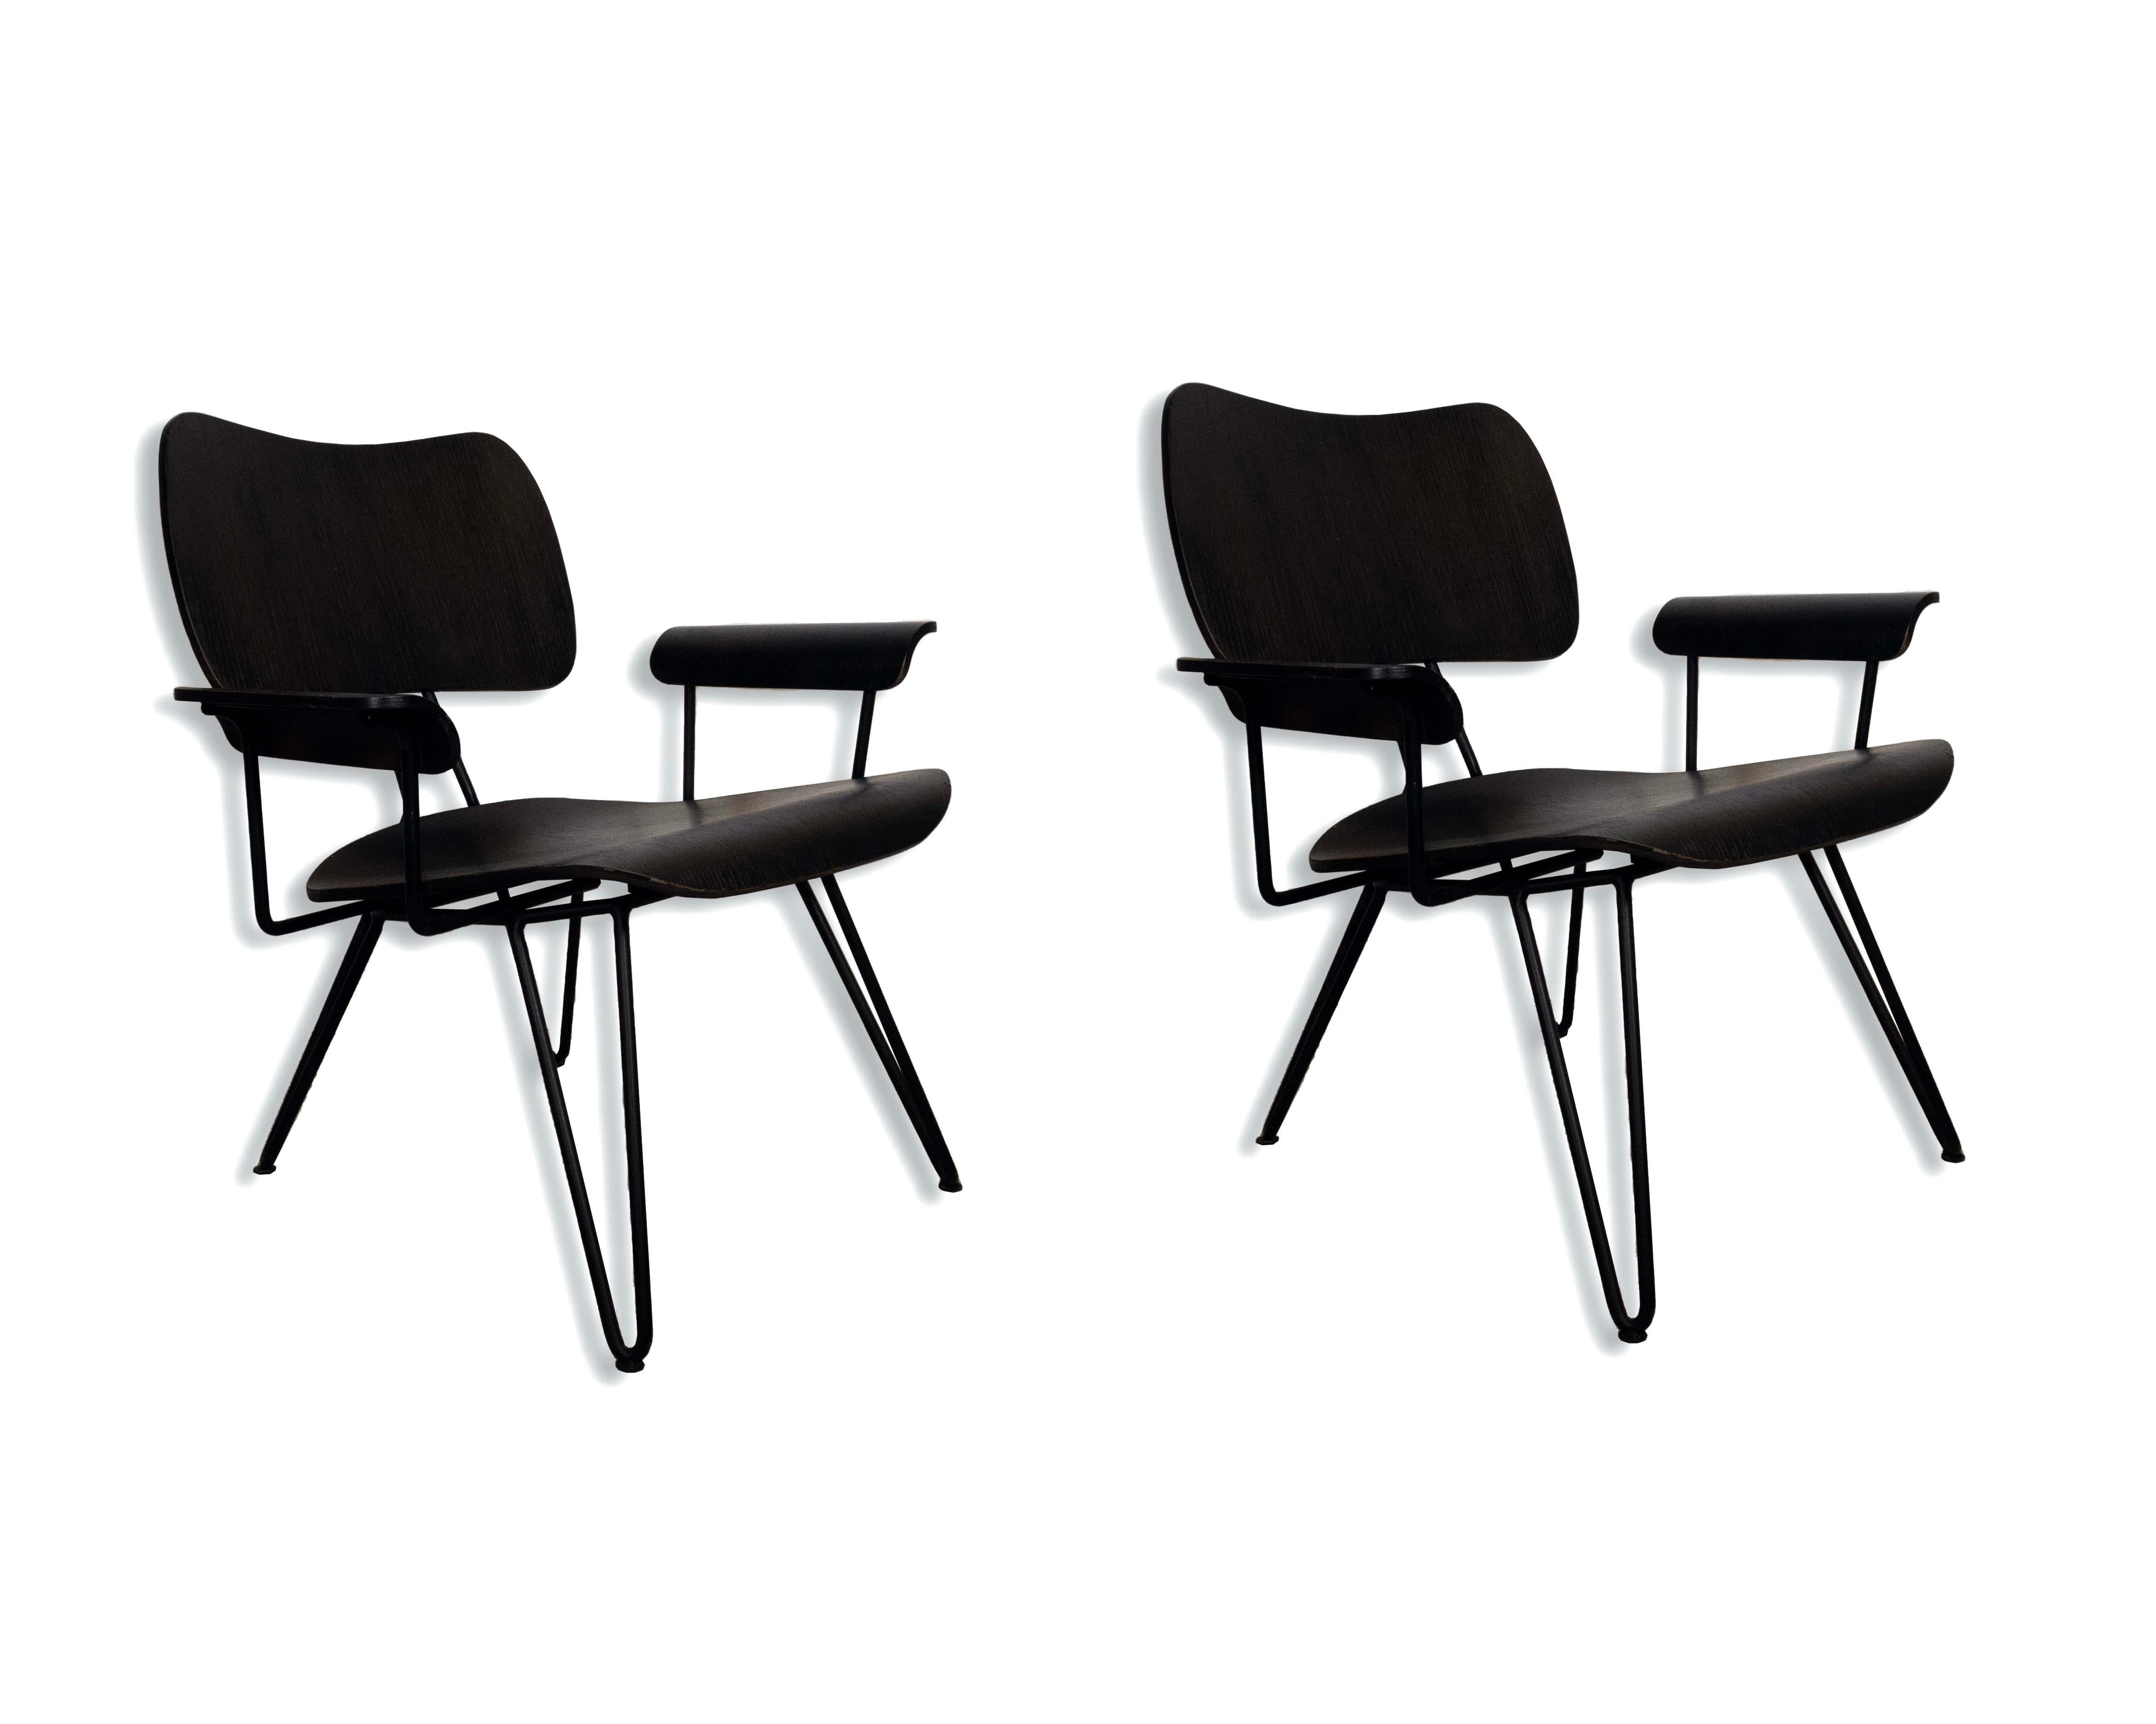 Le Shoppe Too présente cette paire de chaises longues magnifiquement conçues par l'équipe créative de Diesel pour Moroso. Overdyed Reloaded est le terme utilisé pour ces chaises en bois de bouleau et en fer forgé noir. En très bon état. Dimensions :